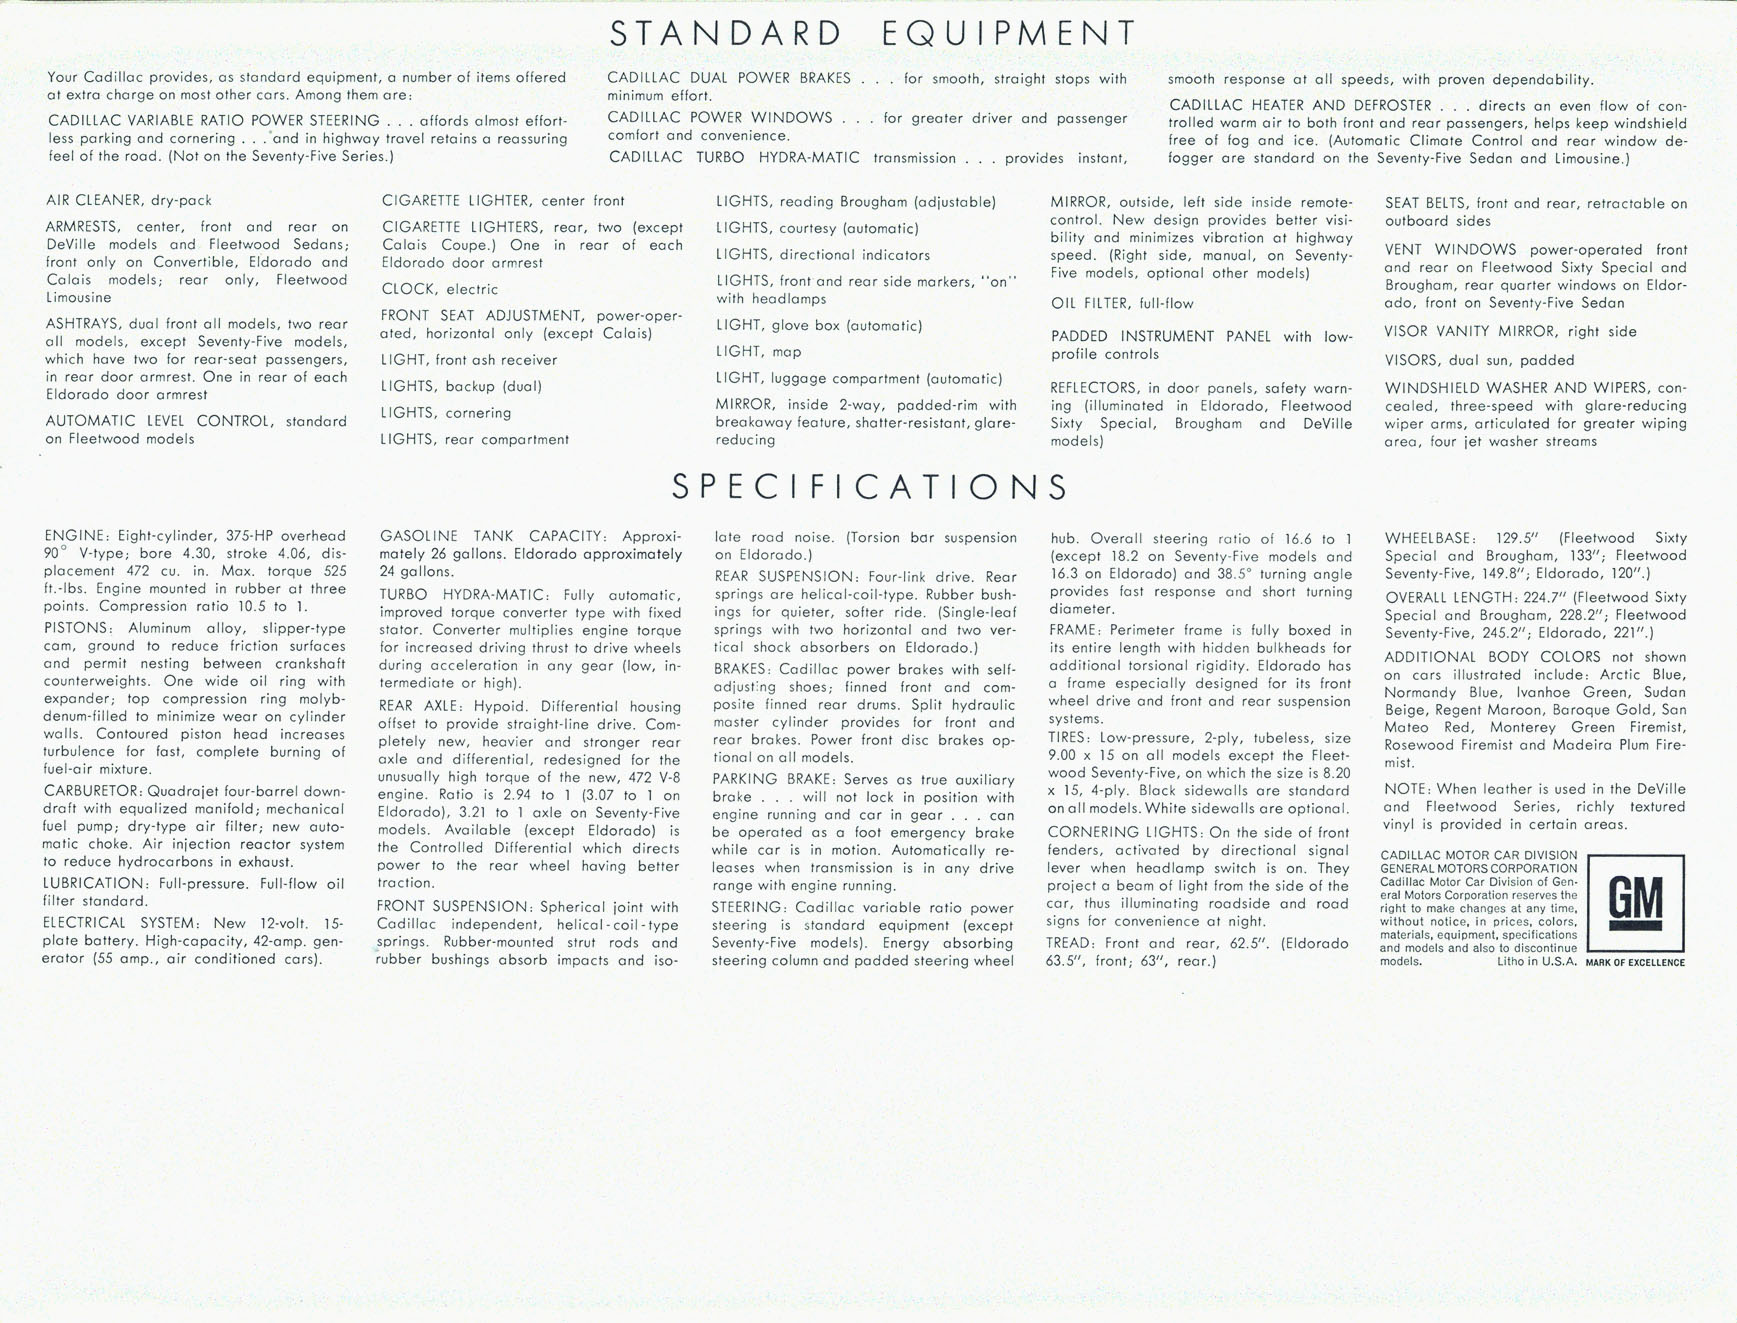 1968 Cadillac Brochure Page 13